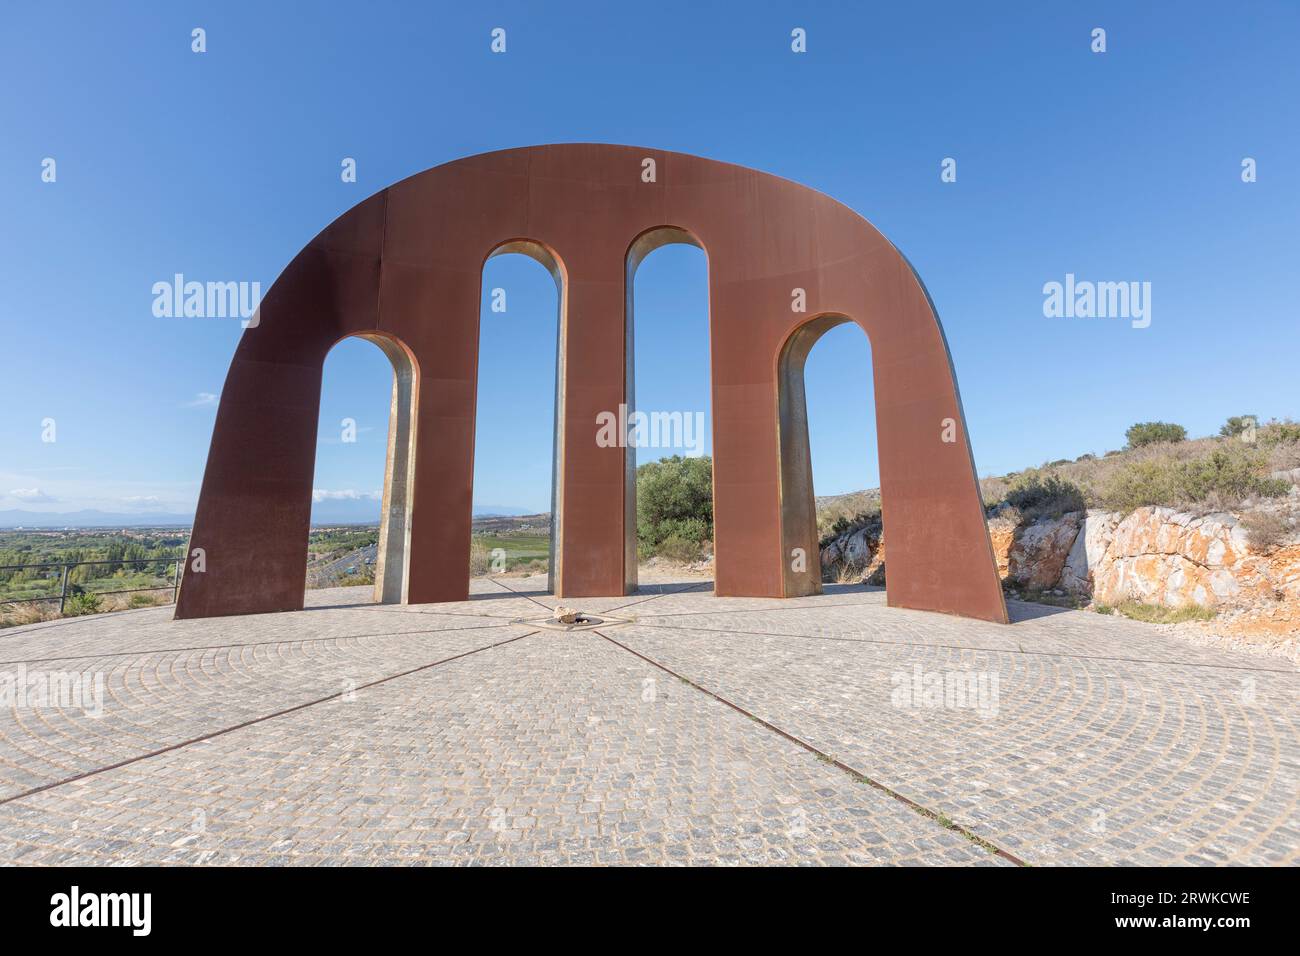 La porta dei paesi catalani è un'opera dello scultore Emili Armengol e segna il punto di partenza settentrionale dei paesi catalani. Foto Stock